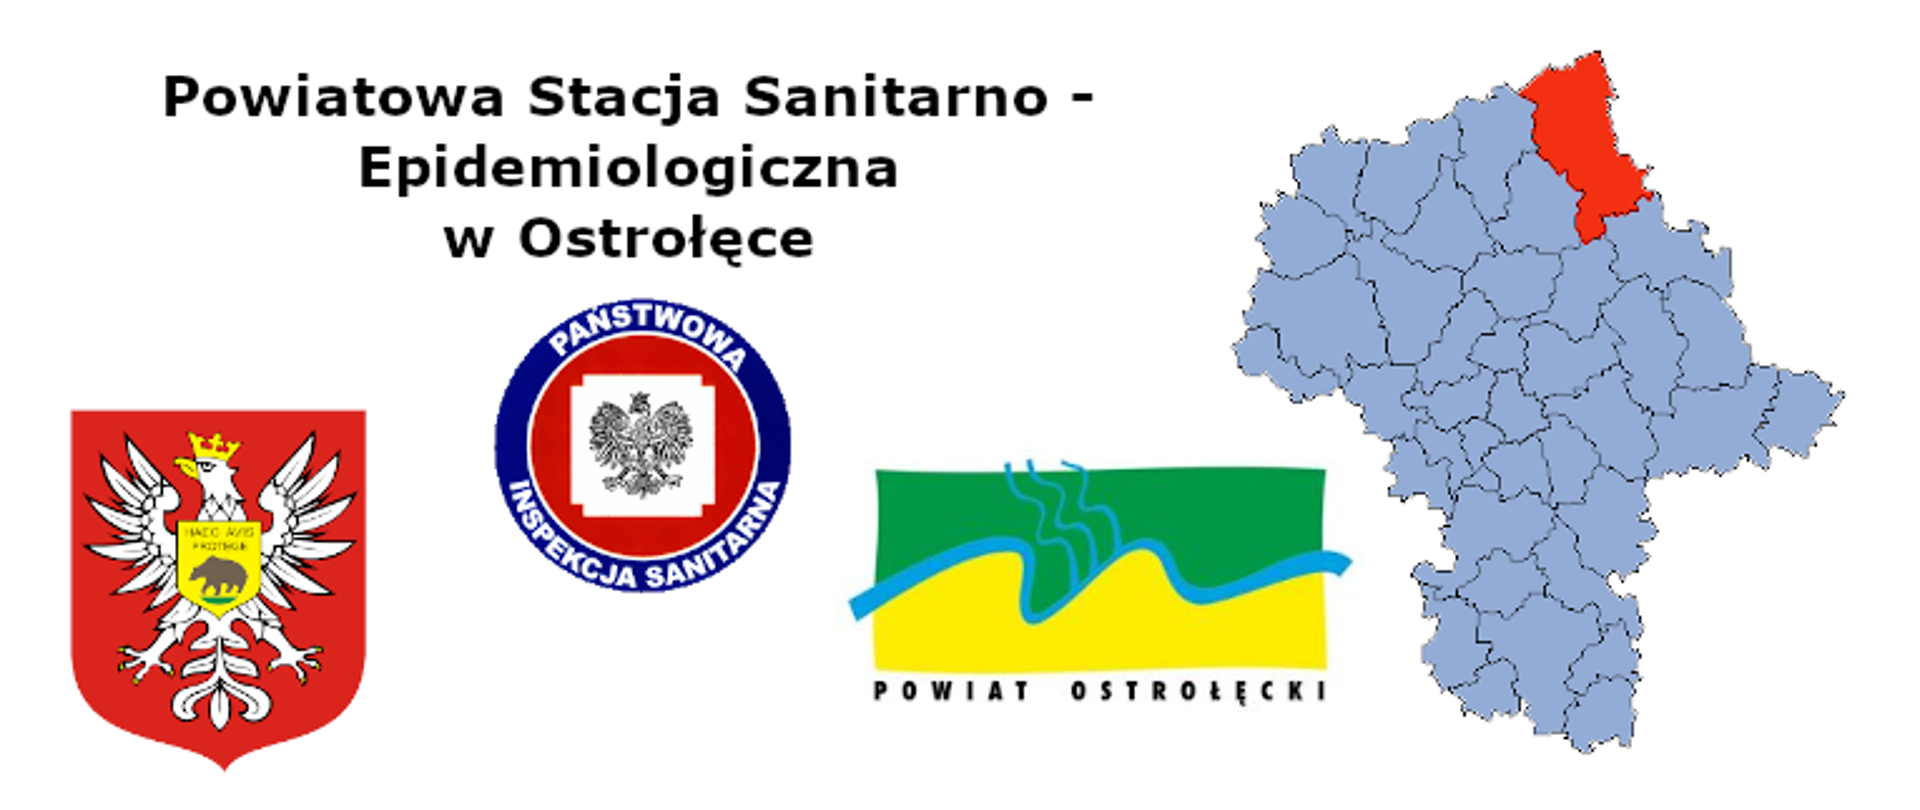 Baner logo PIS, mapa Województwa mazwieckiego herb Miasta Ostrołęka, logo powiatu ostrołęckiego